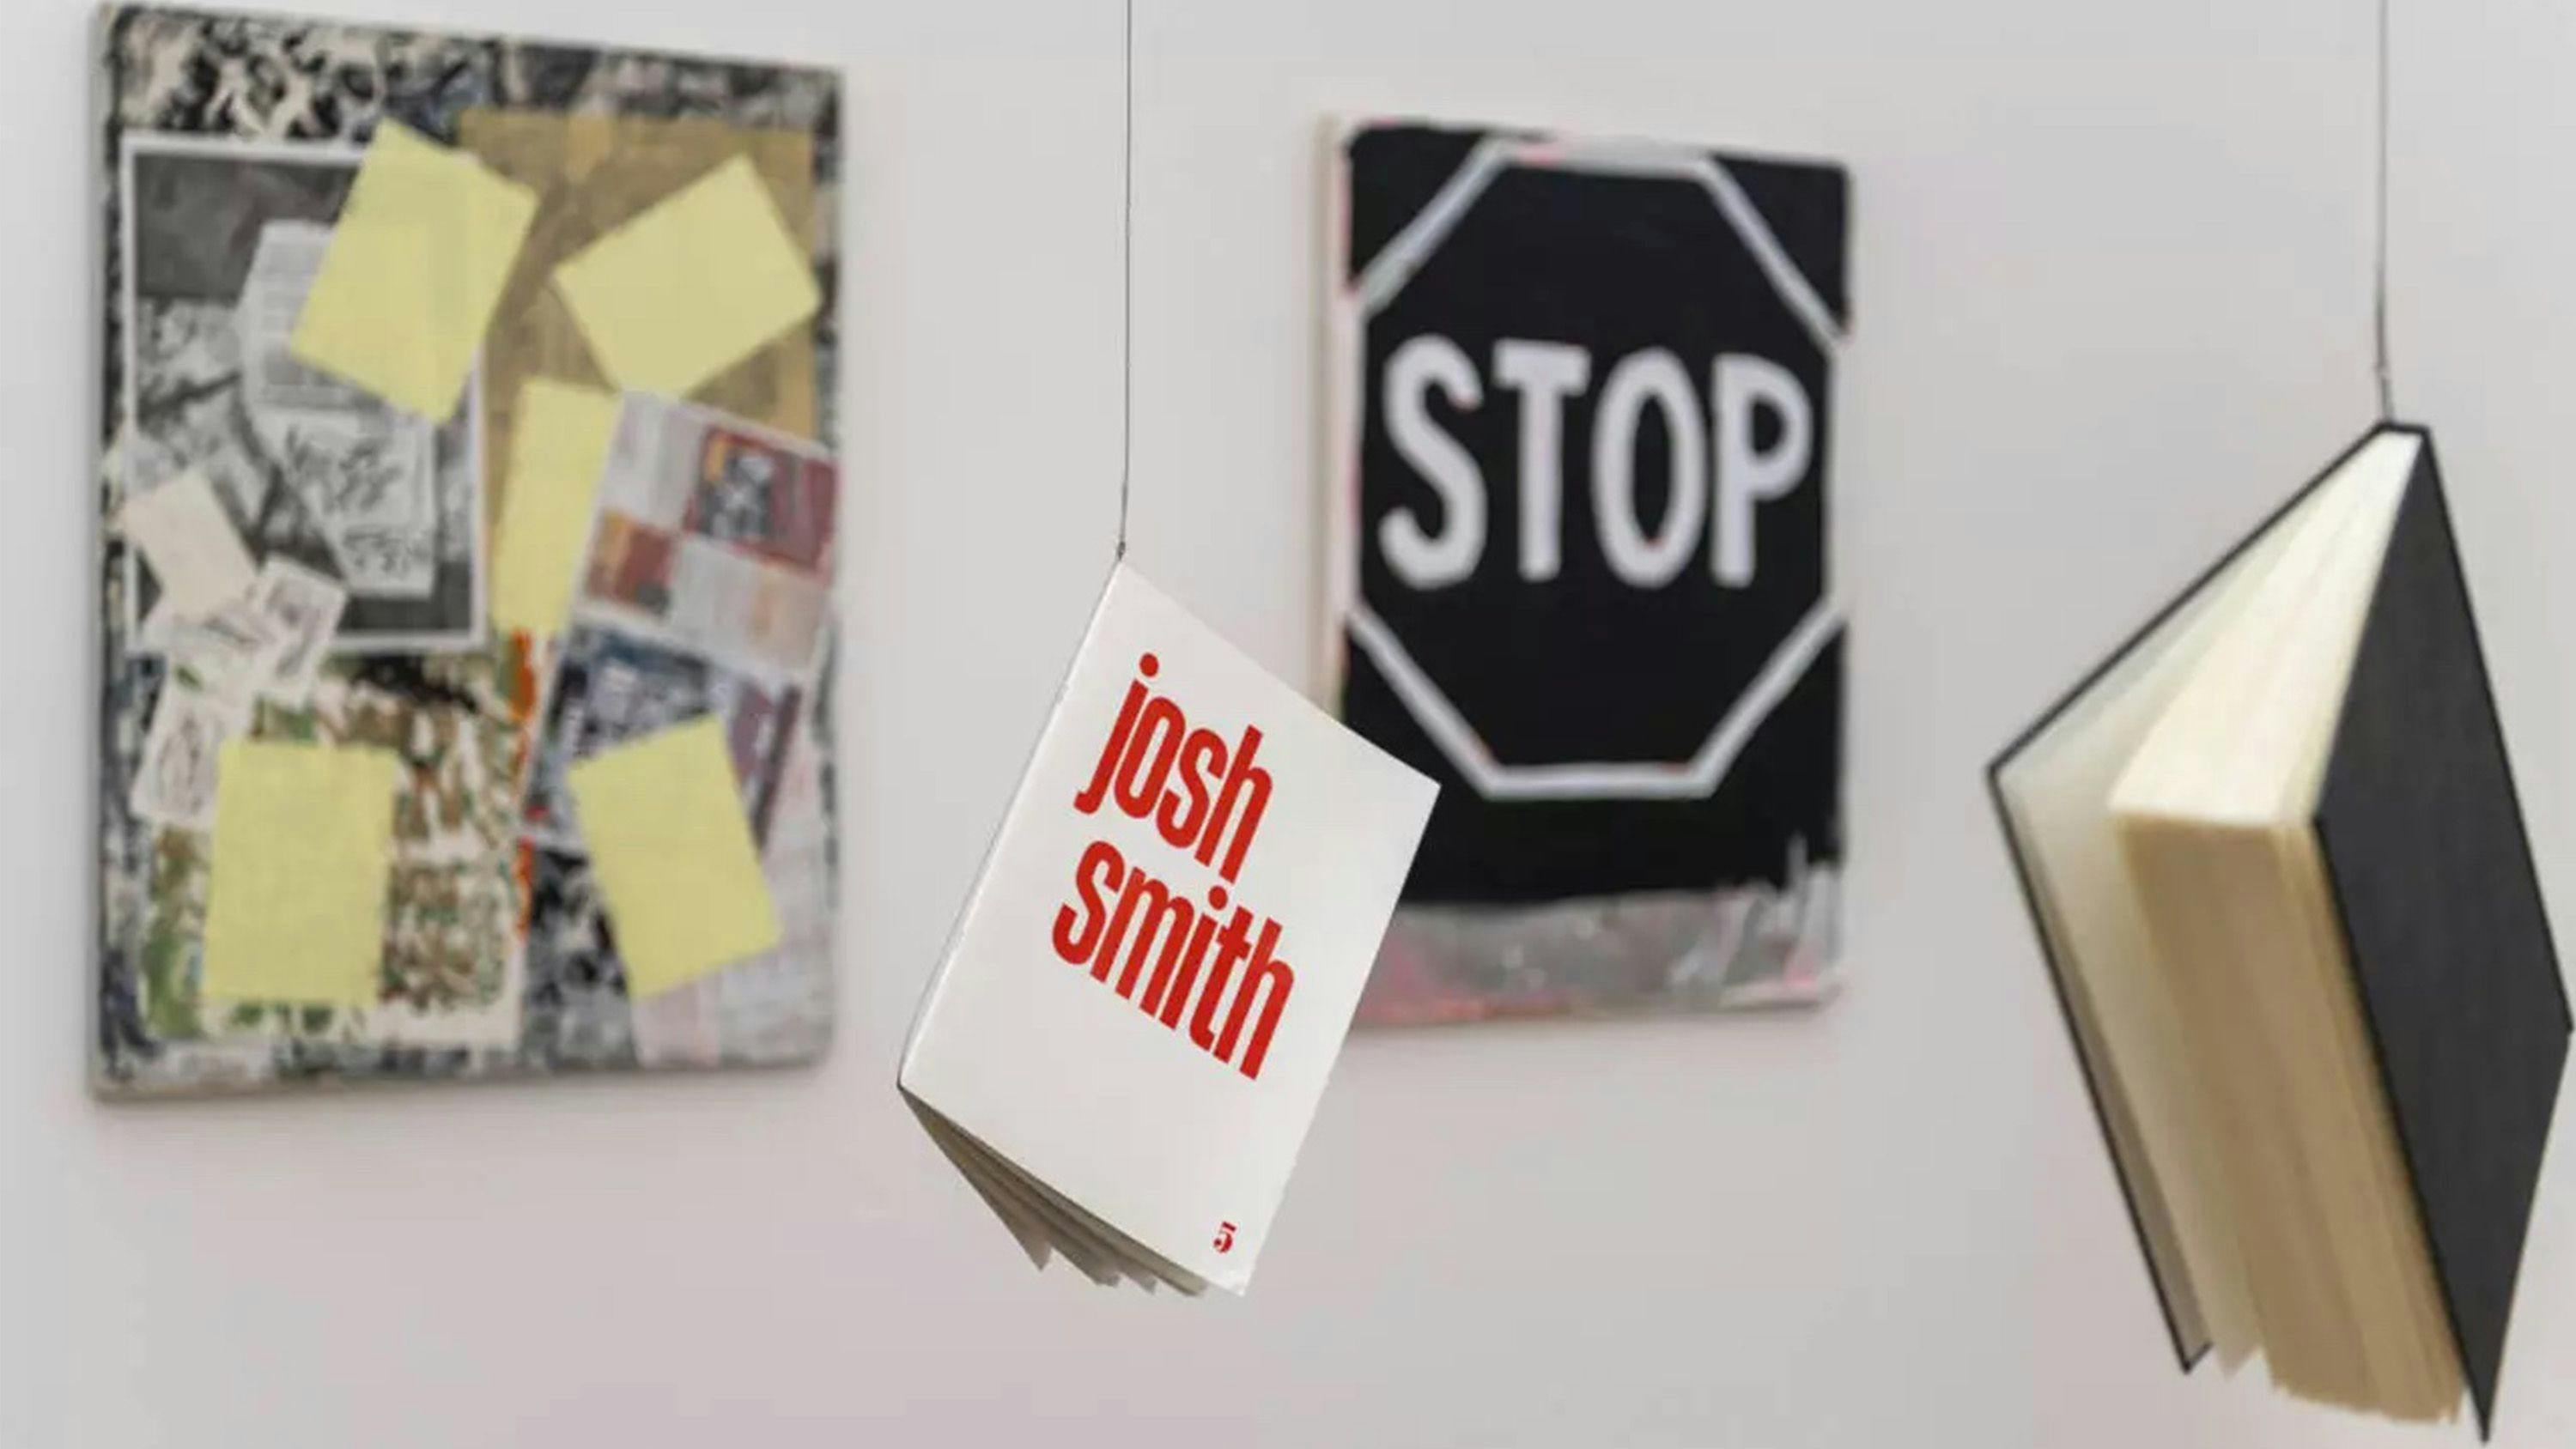 Installation view of the exhibition "Josh Smith;" at Bayerische Staatsgemäldesammlungen in Munich